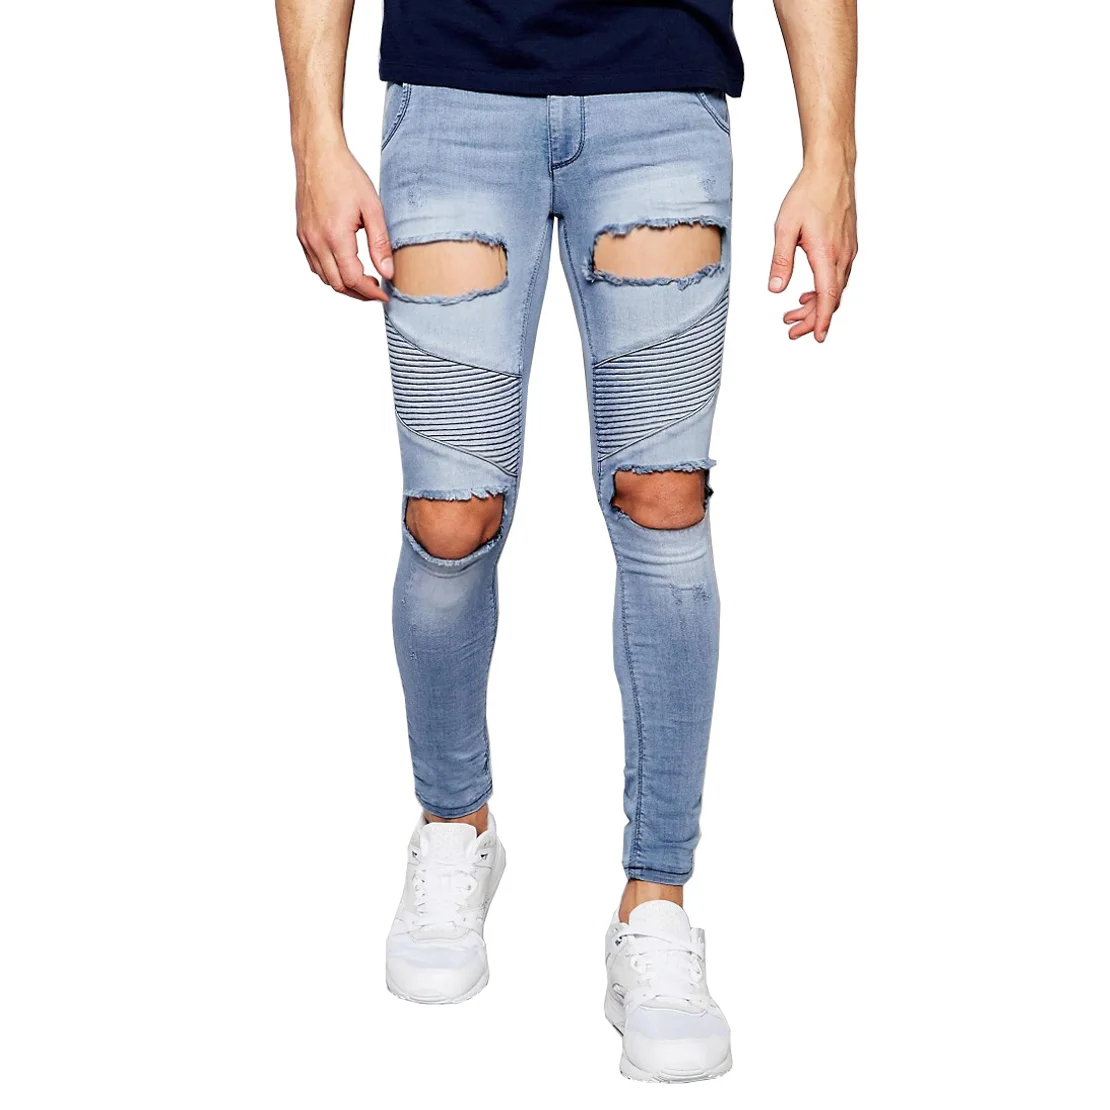 

2017 New Men Jeans Extreme Rips Hole Hip Hop Fashion Designer Brand Slim Skinny Denim Distressed Biker Jeans vT0268